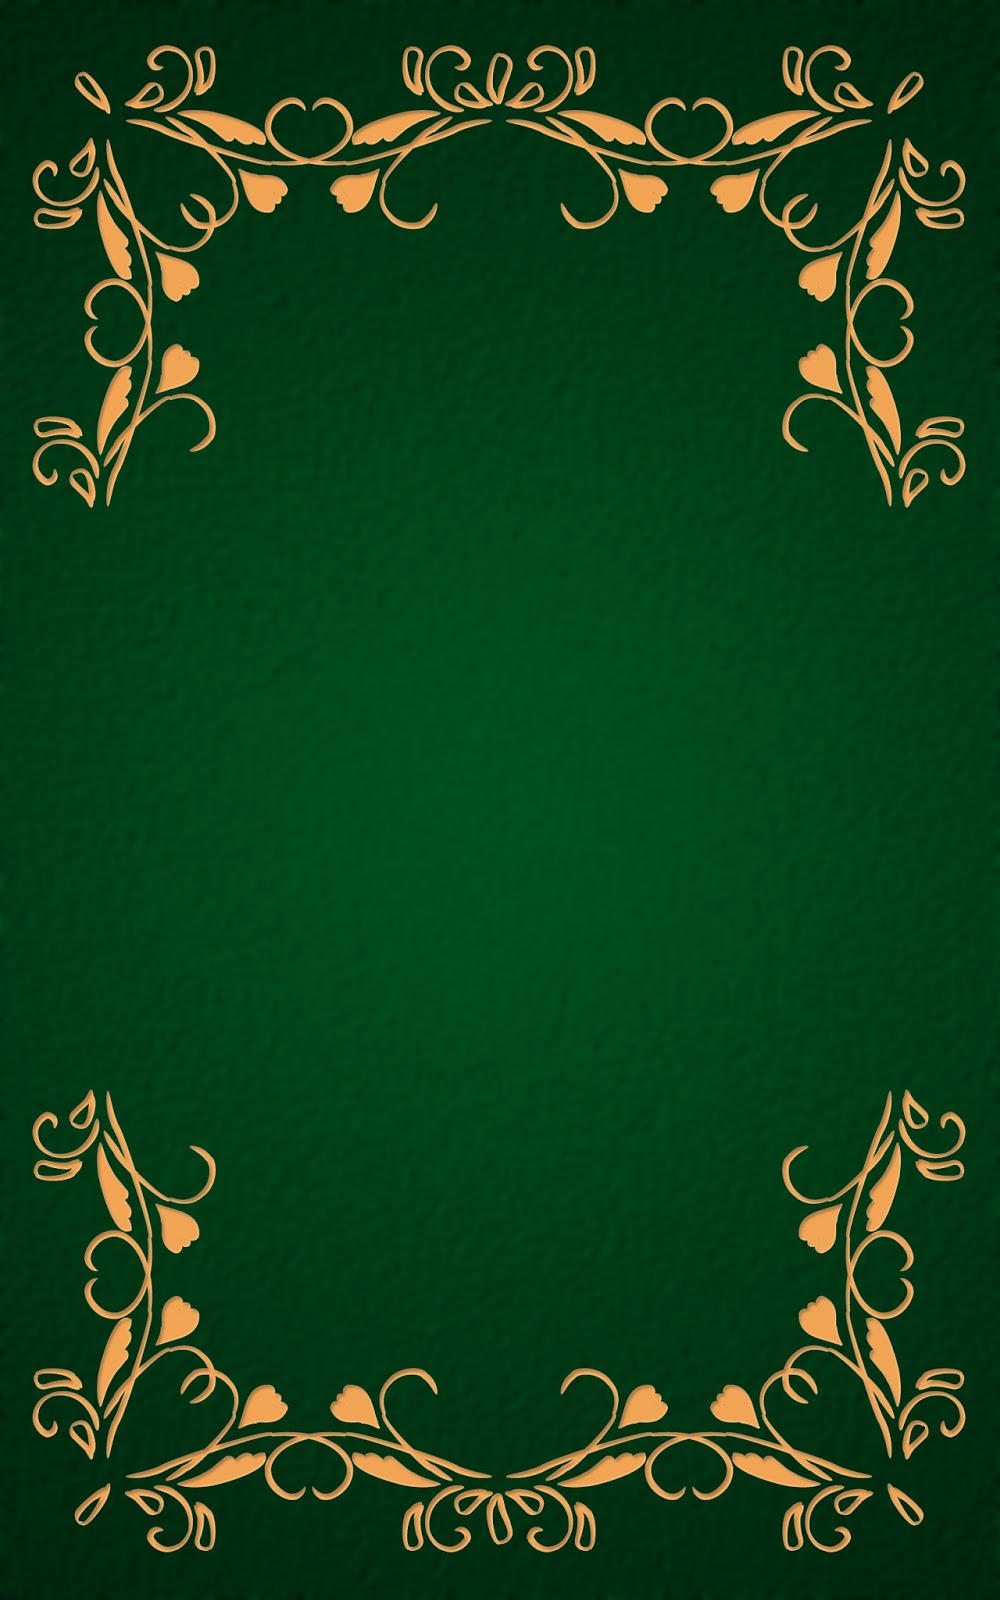 いーブックデザイン 電子書籍用表紙画像フリー素材 001 飾り罫 緑